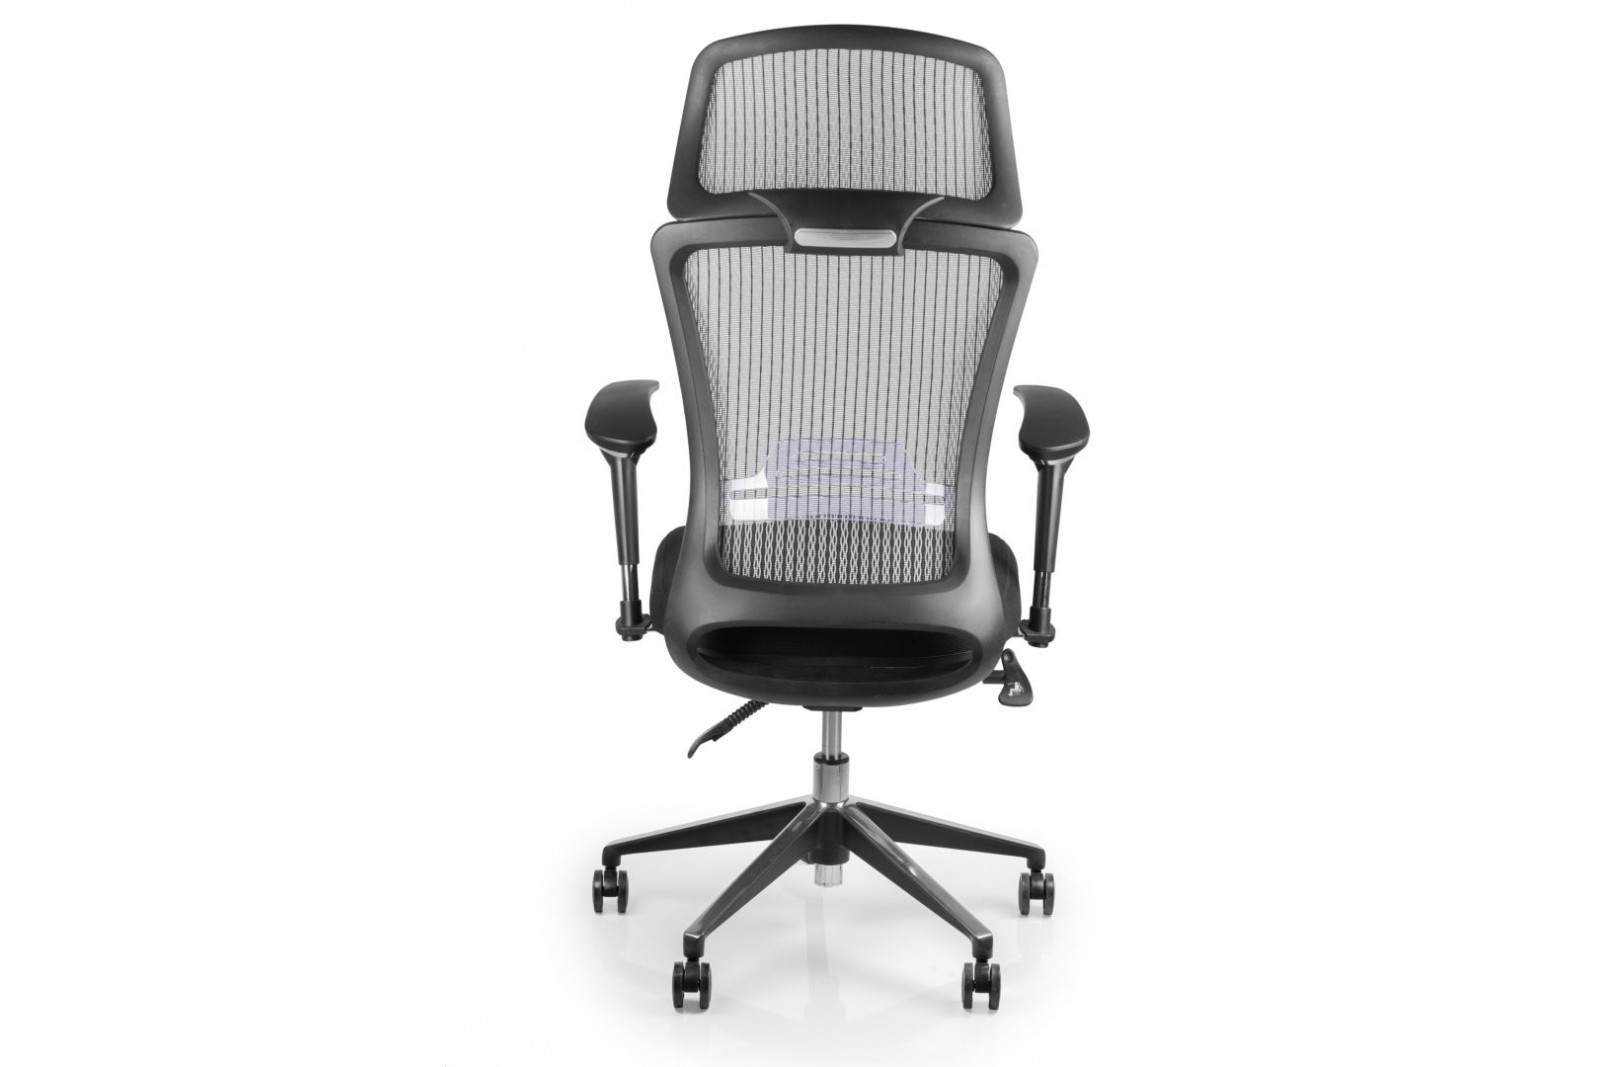 Кресло офисное BRS- Style Grey BS-02